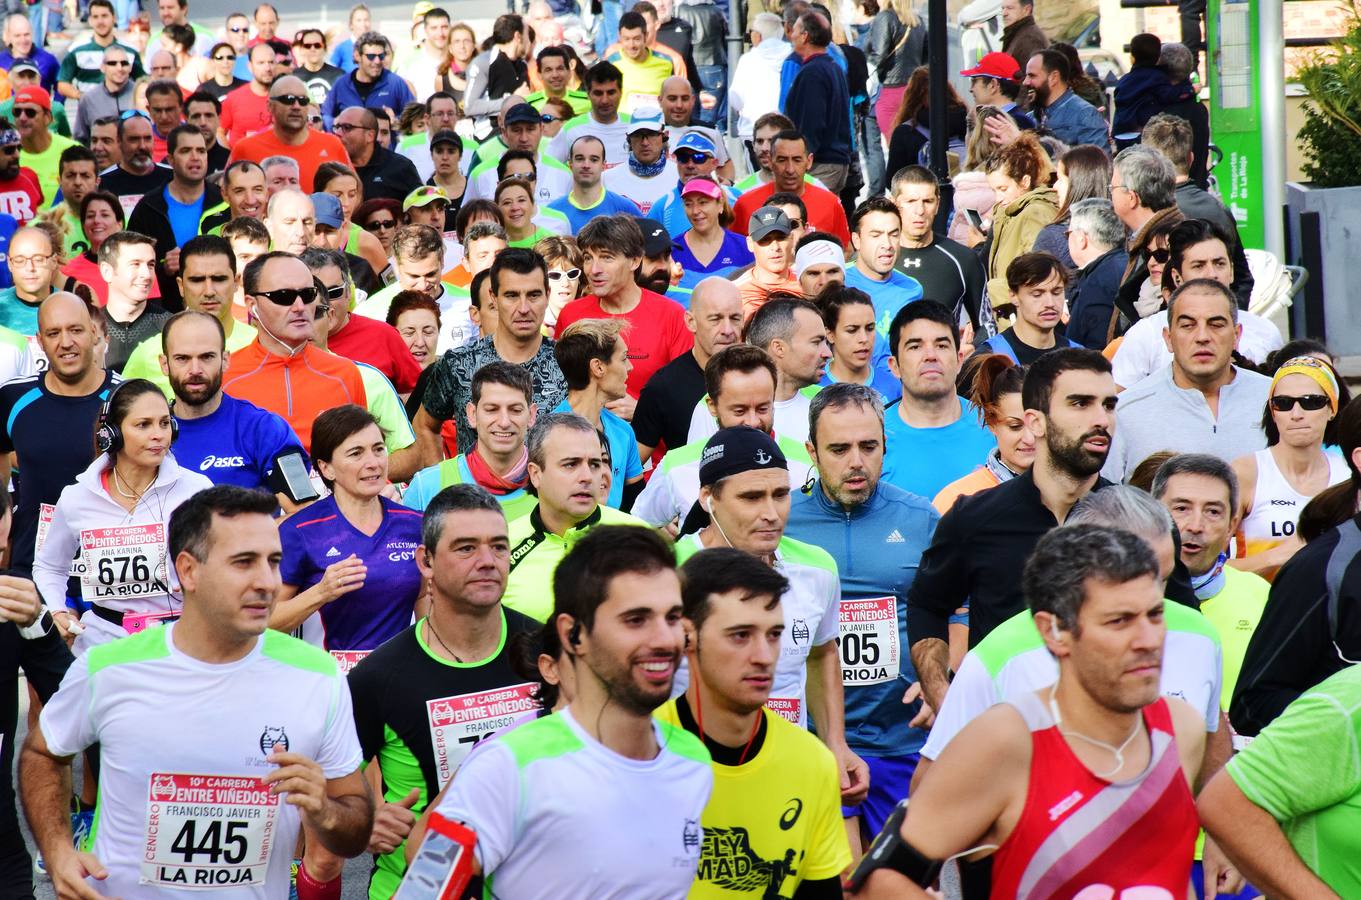 Gran jornada de atletismo en la ya tradicional Carrera Entreviñedos de Cenicero